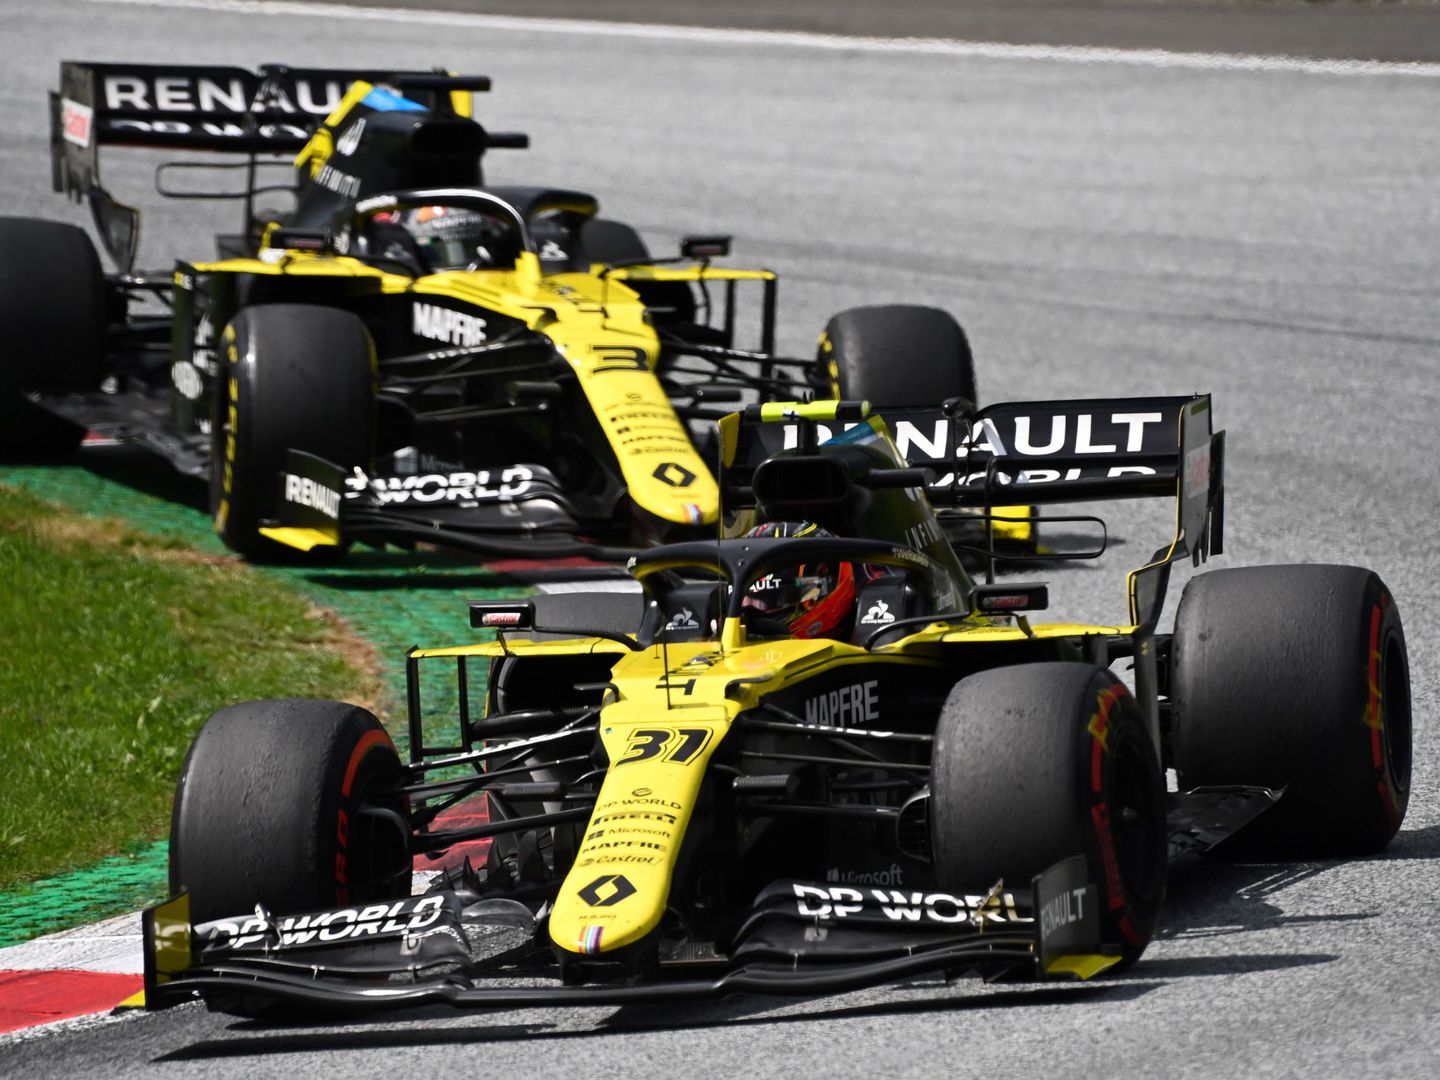 Los monoplazas de Renault también fueron reclamados por Racing Point tras el GP de Japón de 2019 (GETTY IMAGES)